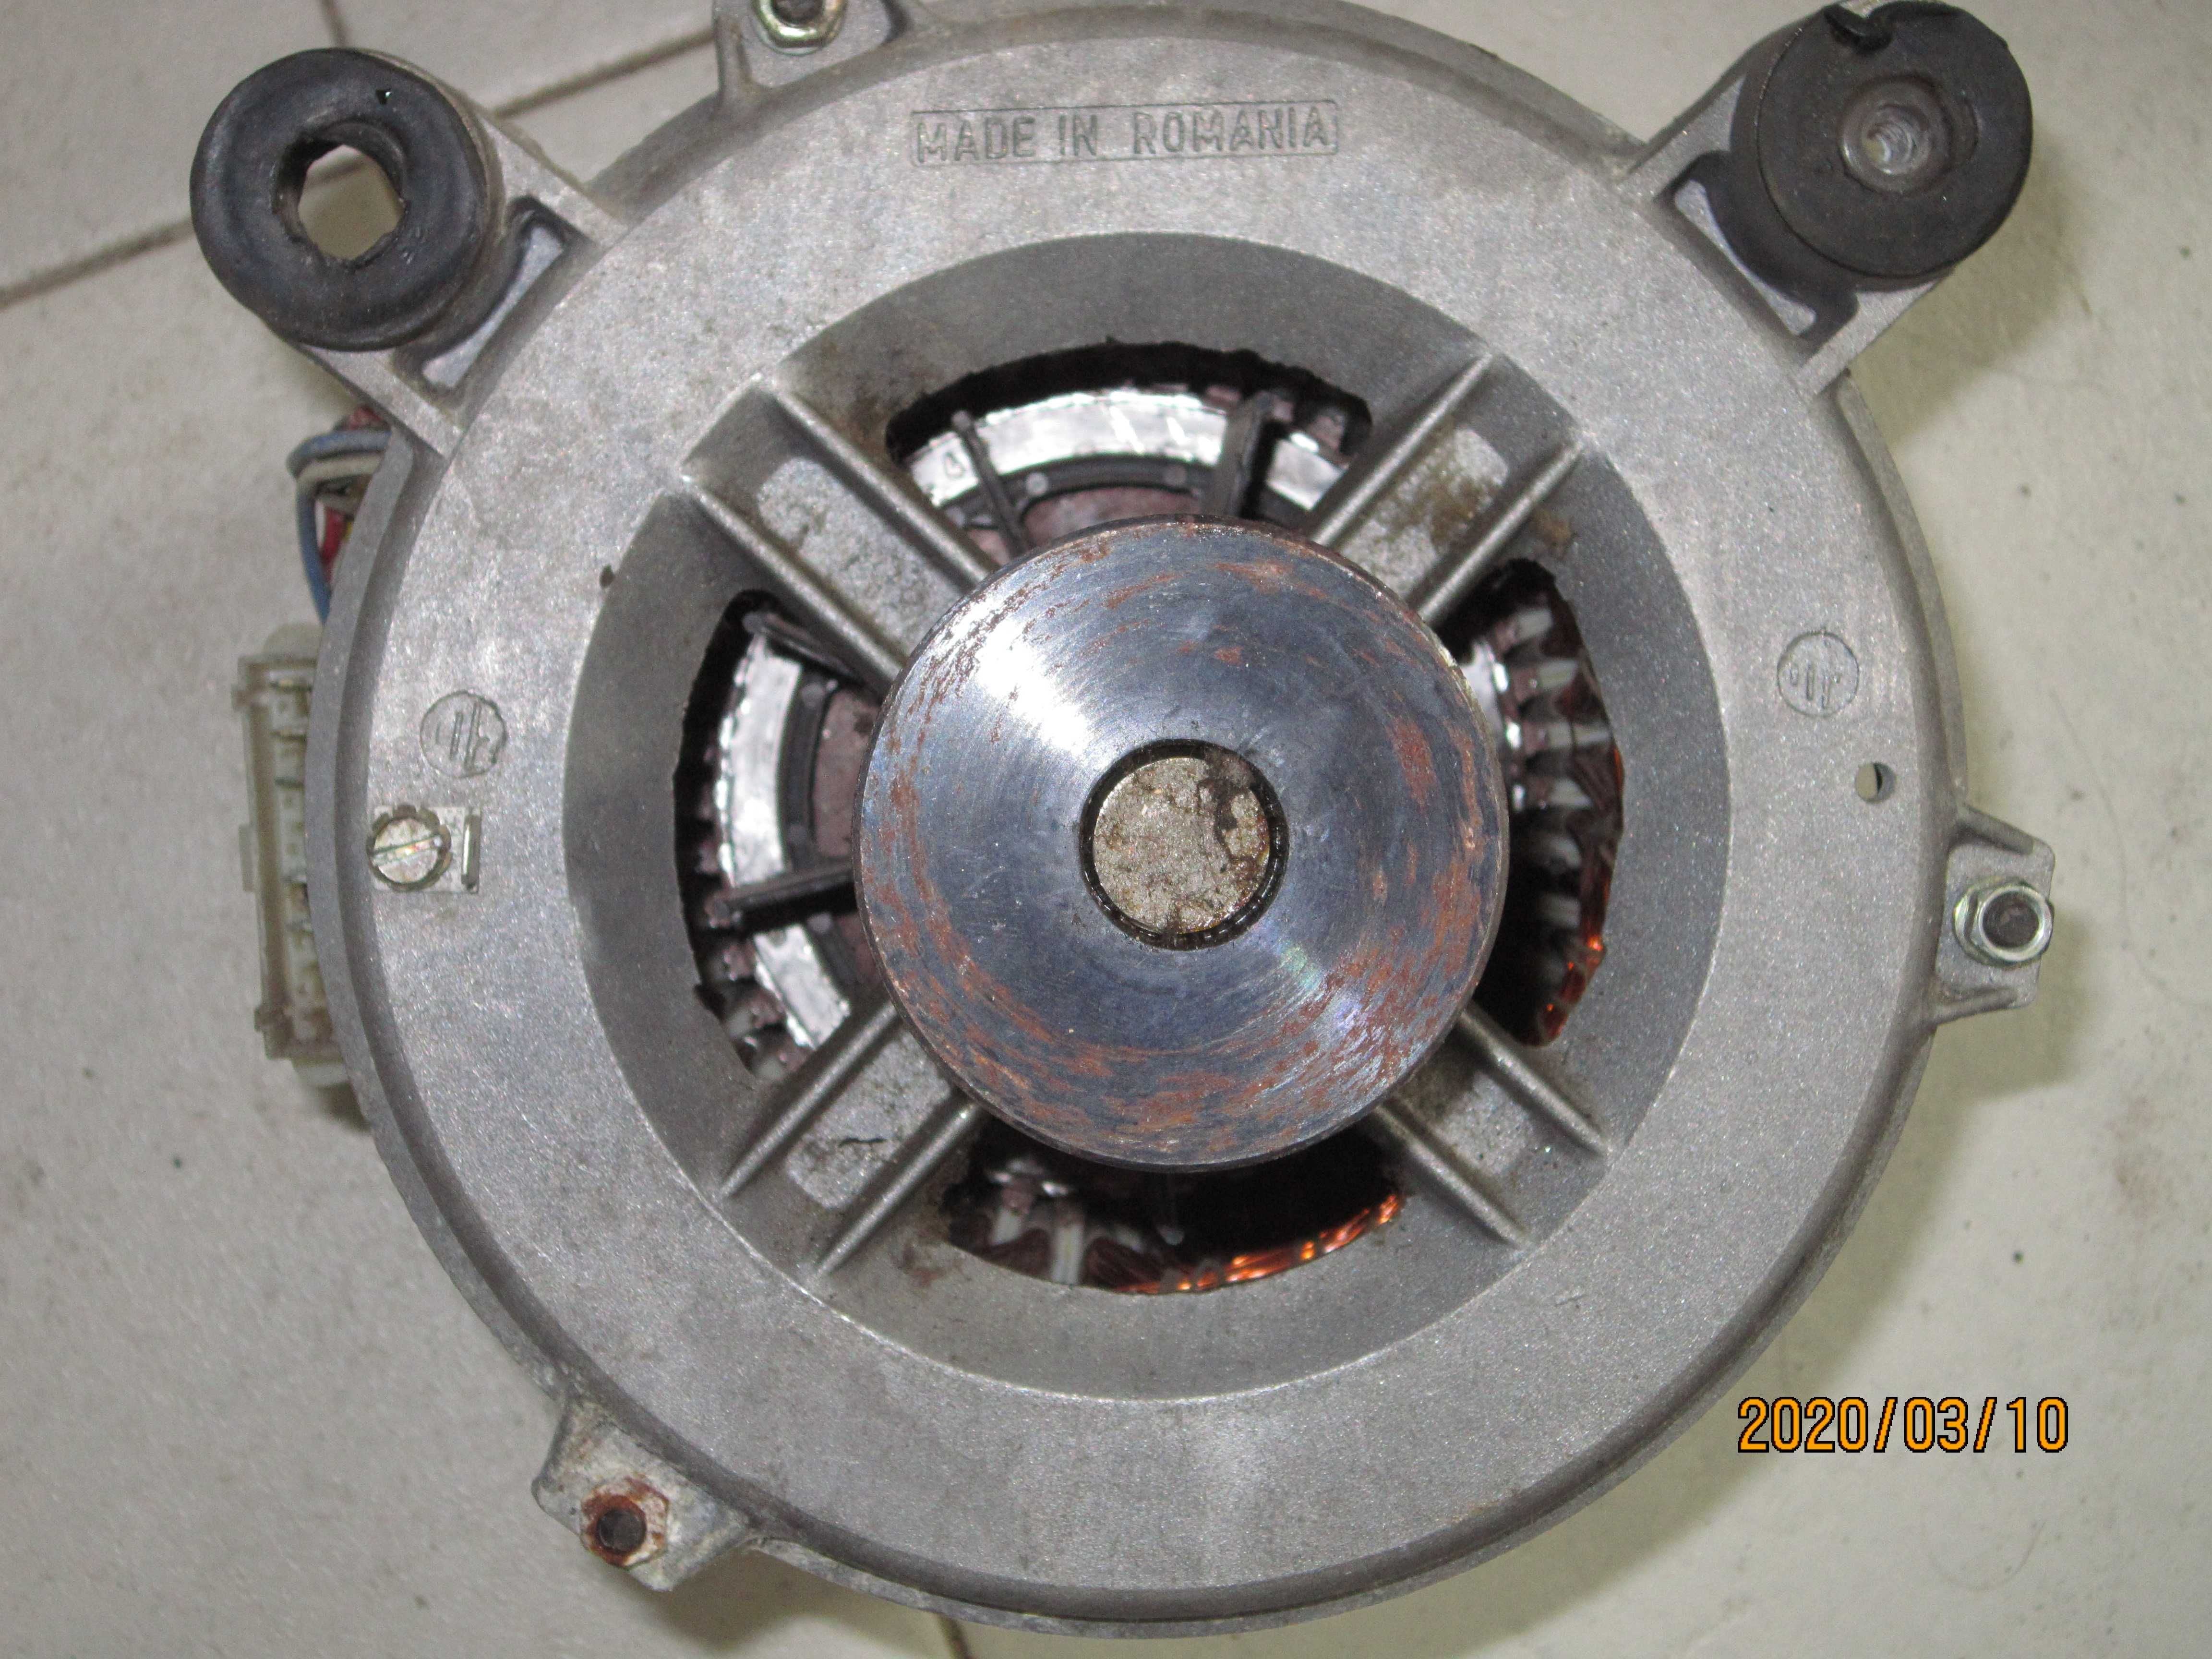 Электродвигатель от стиральной машины Индезит 063W. Румыния.